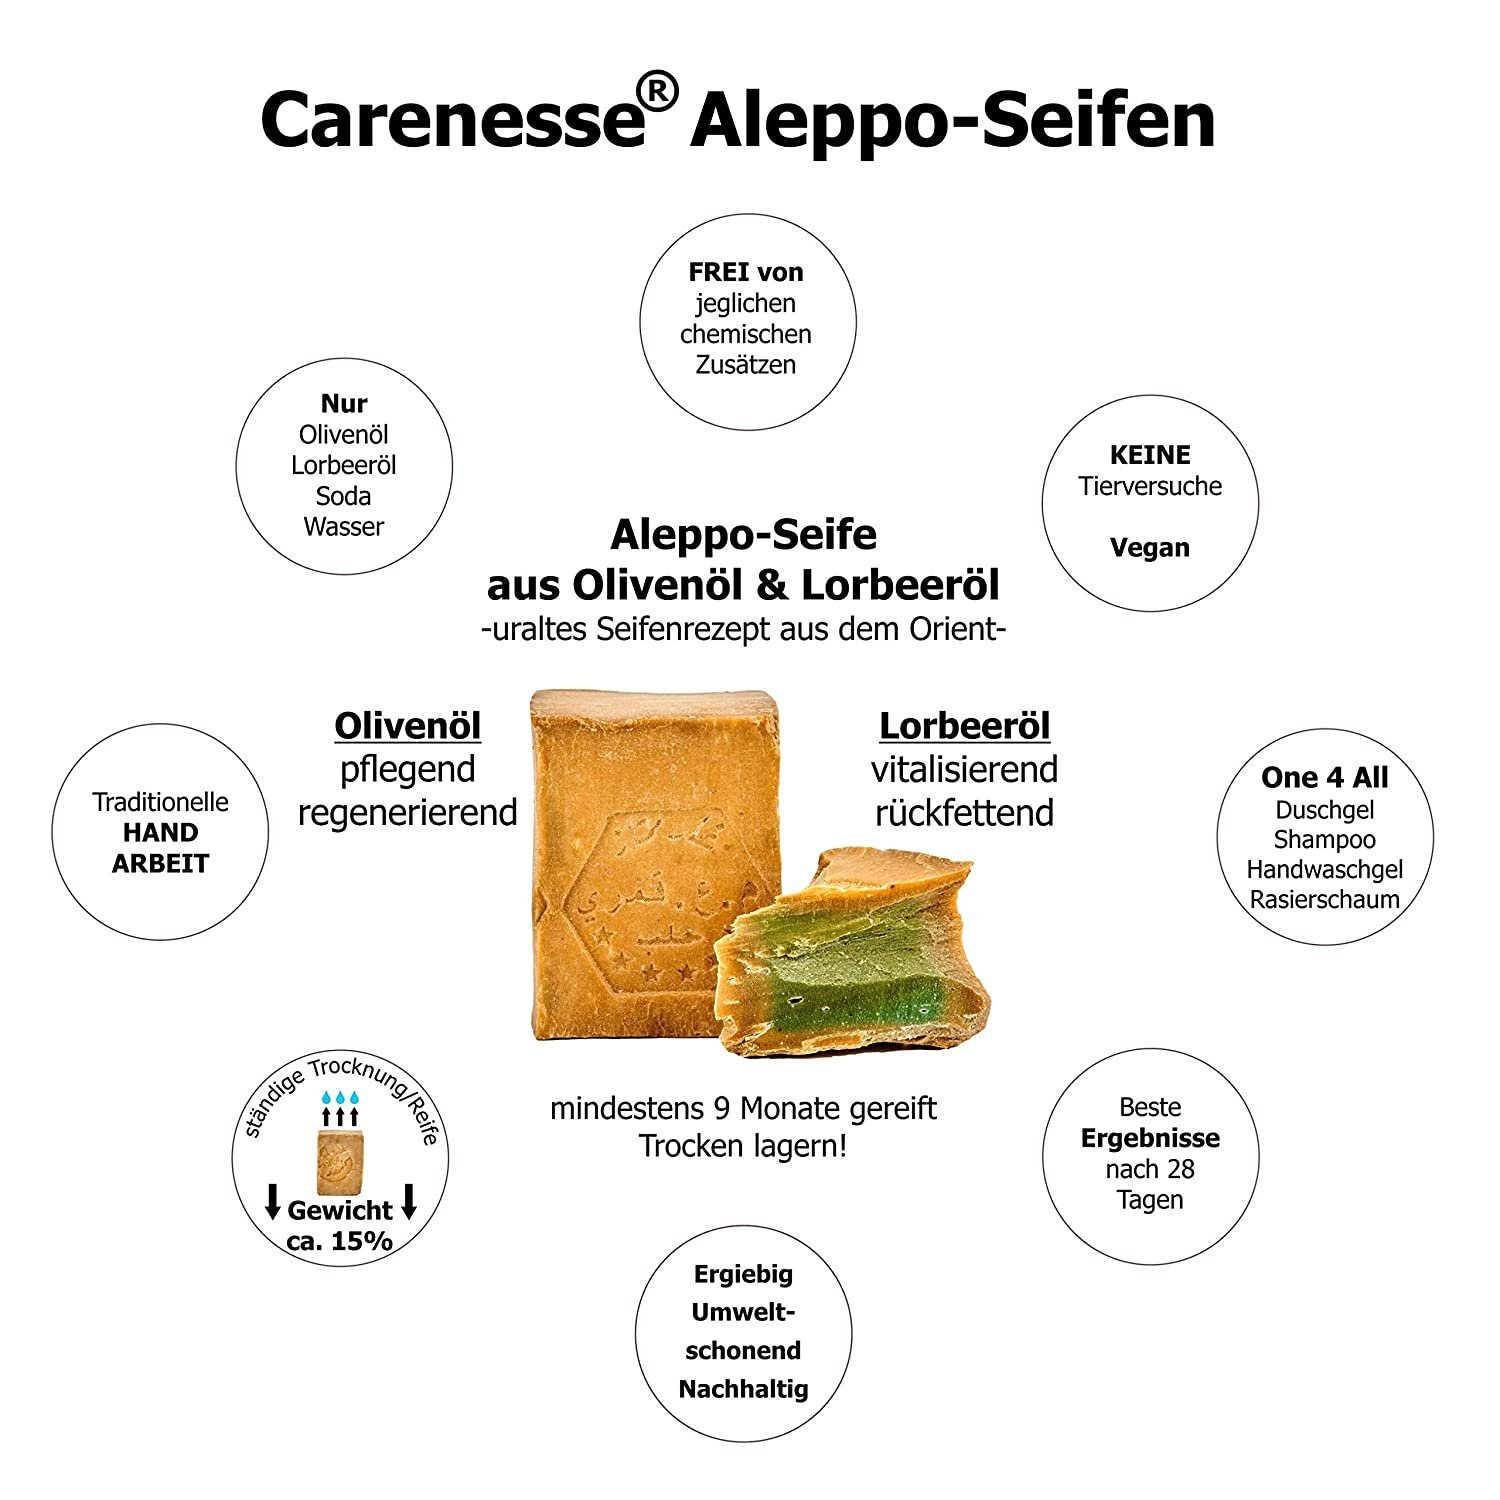 Aleppo-Seife Gesichtsseife Olivenölseife, & Seife Carenesse Olivenöl, Haarseife 45% Original 55% Aleppo Handseife Lorbeerölseife Lorbeeröl Alepposeife